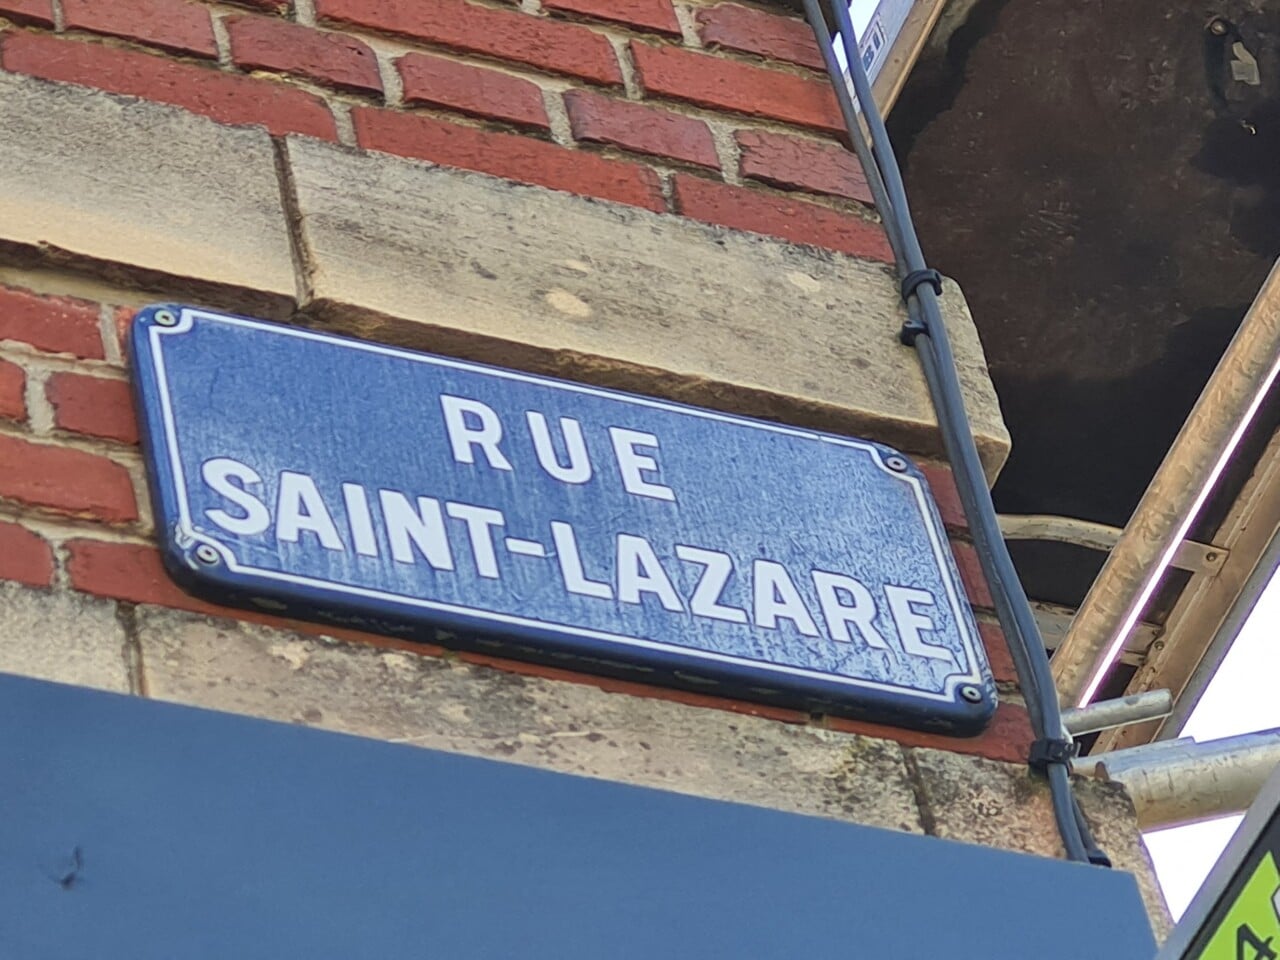 , Il y a la gare Saint-Lazare, mais pourquoi une rue du même nom à Aumale